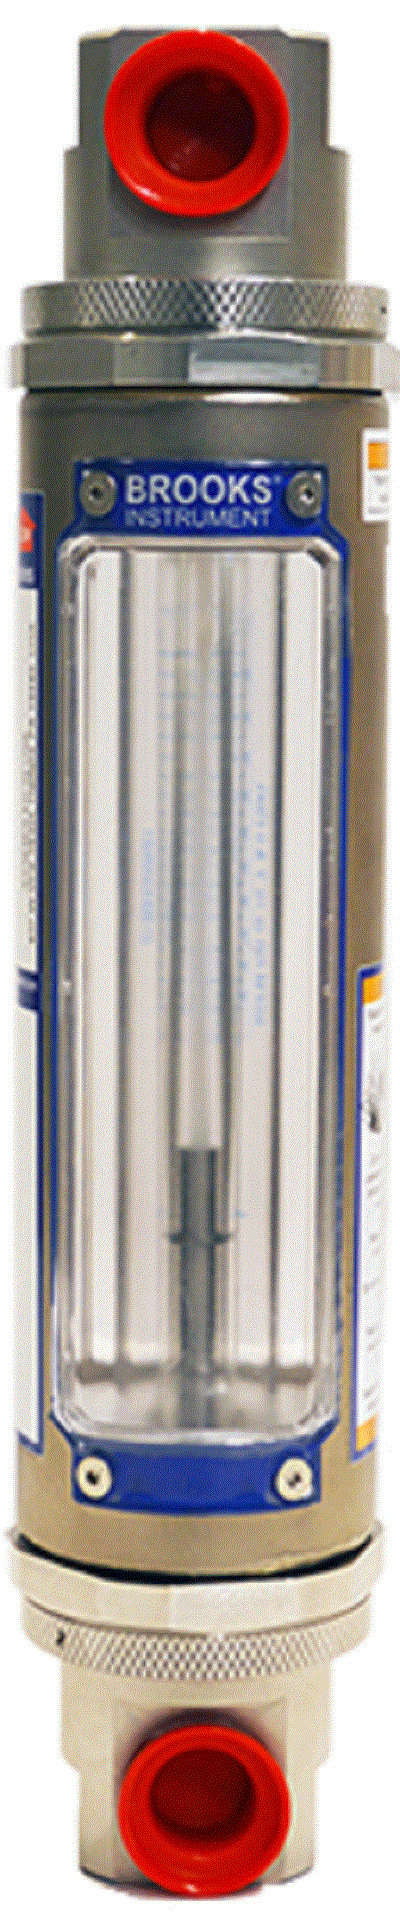 Ротаметр стеклянный для измерения расхода жидкости и газа BROOKS GT1307 Расходомеры